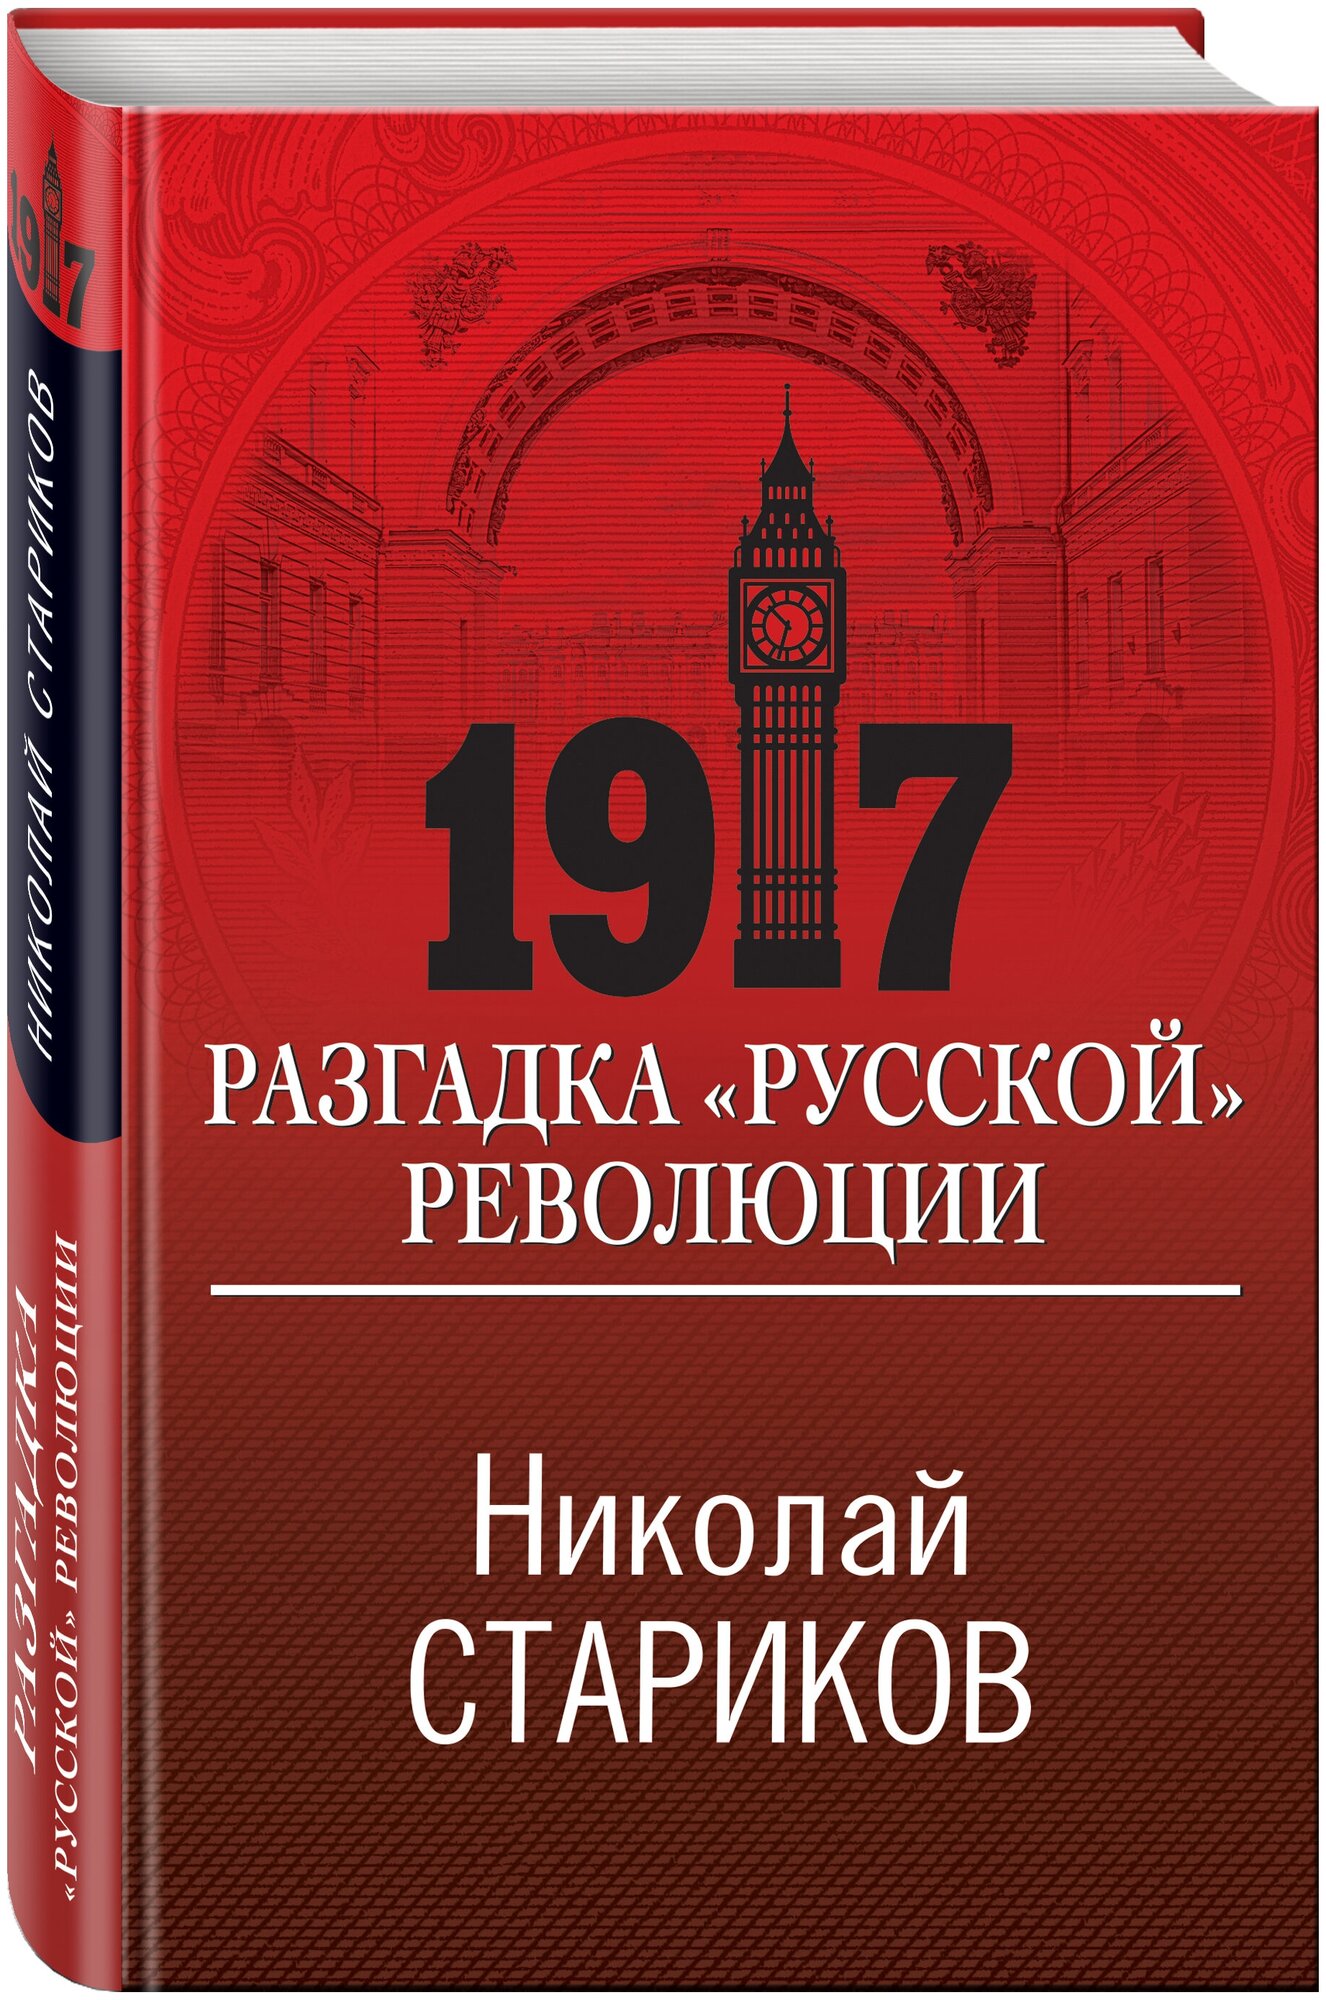 1917. Разгадка "русской" революции - фото №1